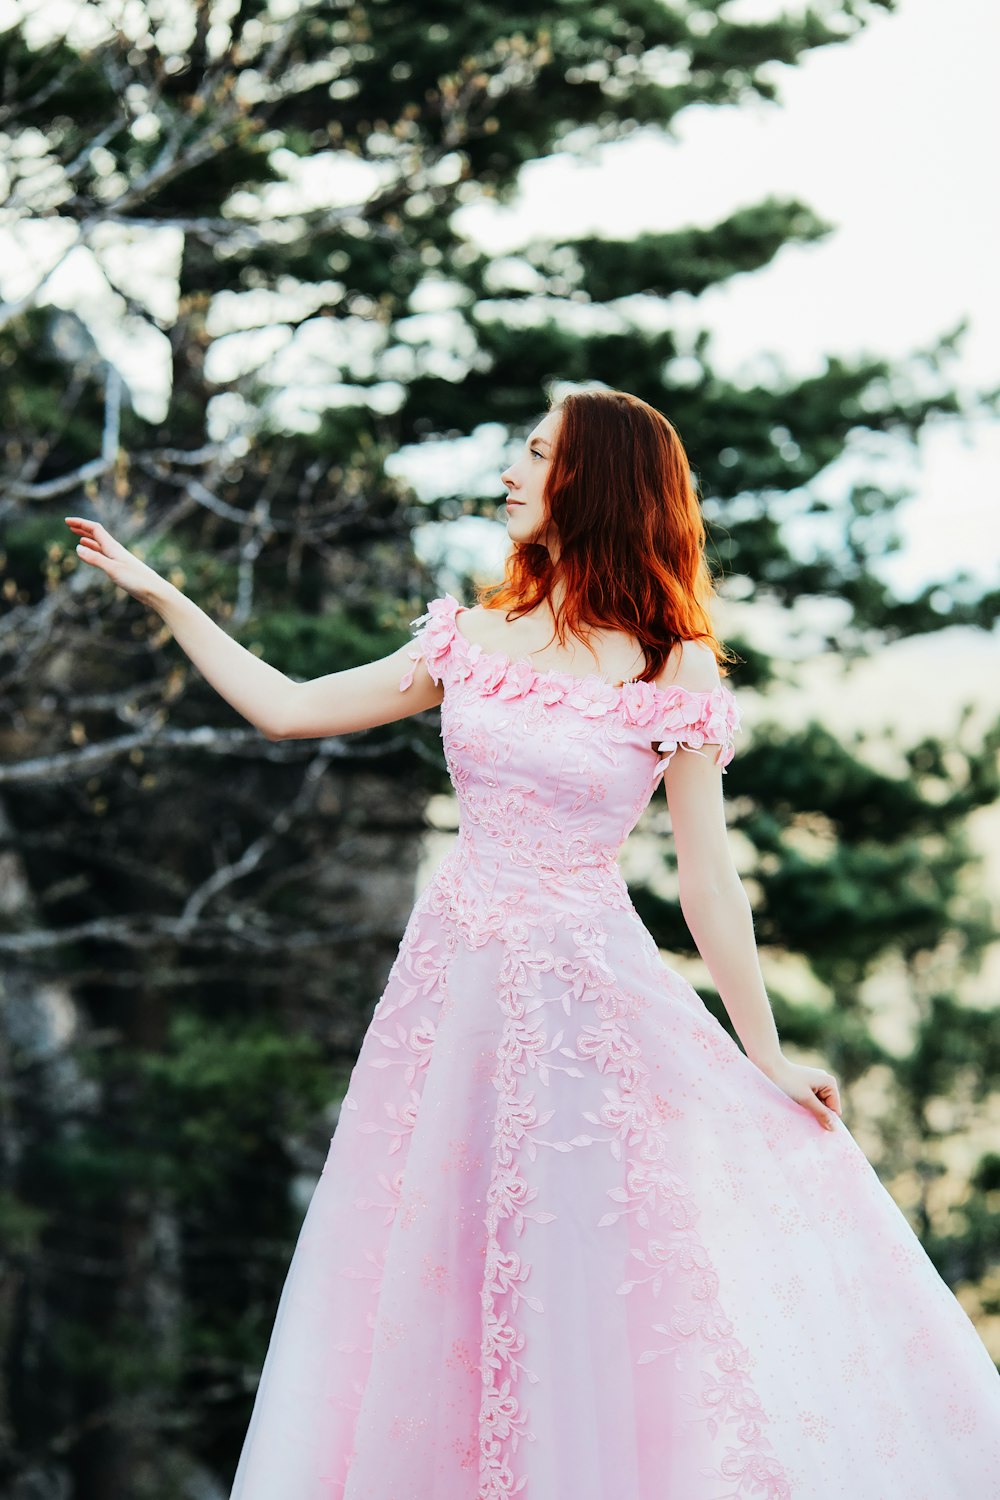 Mädchen in rosa Kleid, das tagsüber im Wald steht